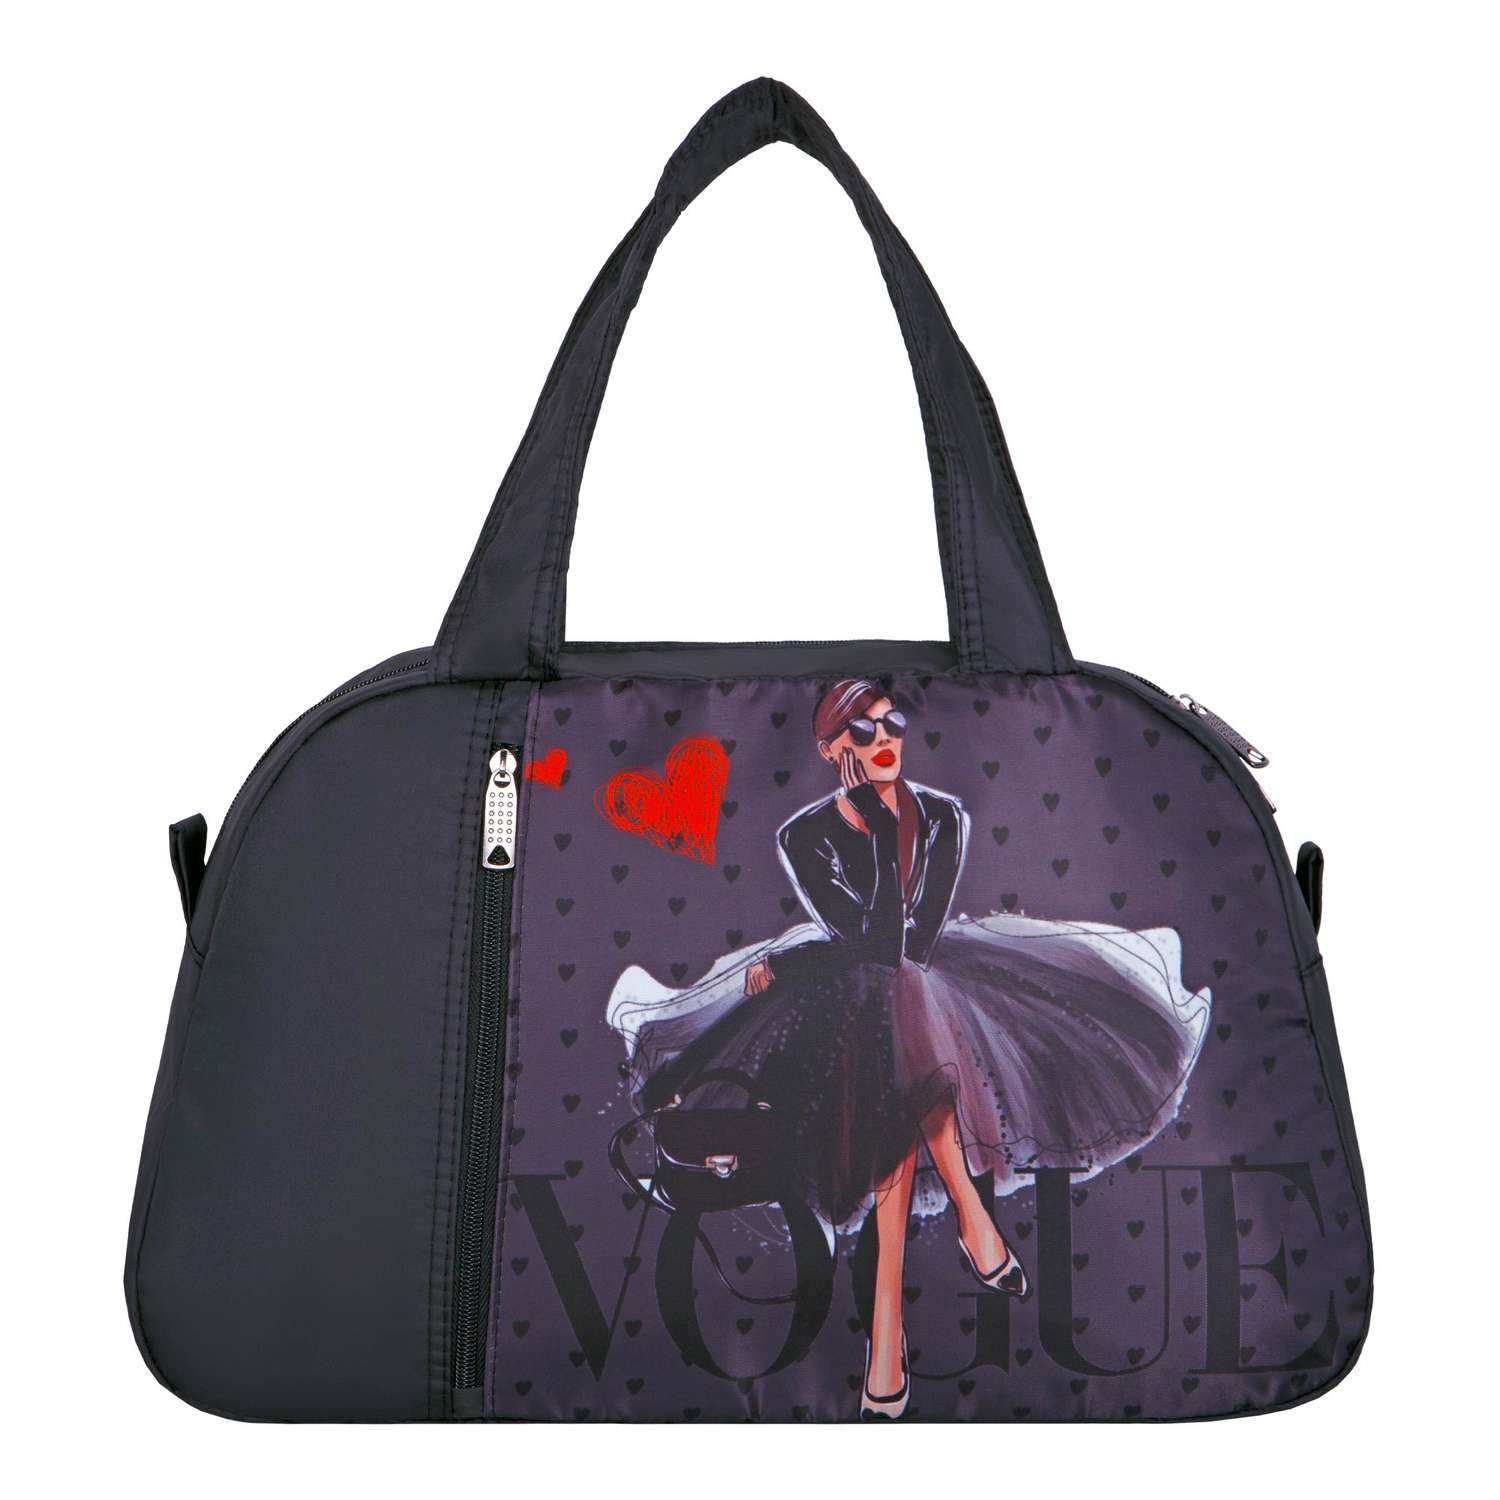 Спортивная сумка ACROSS FM-11 Vogue цвет черный 26х41х16 см - фото 1